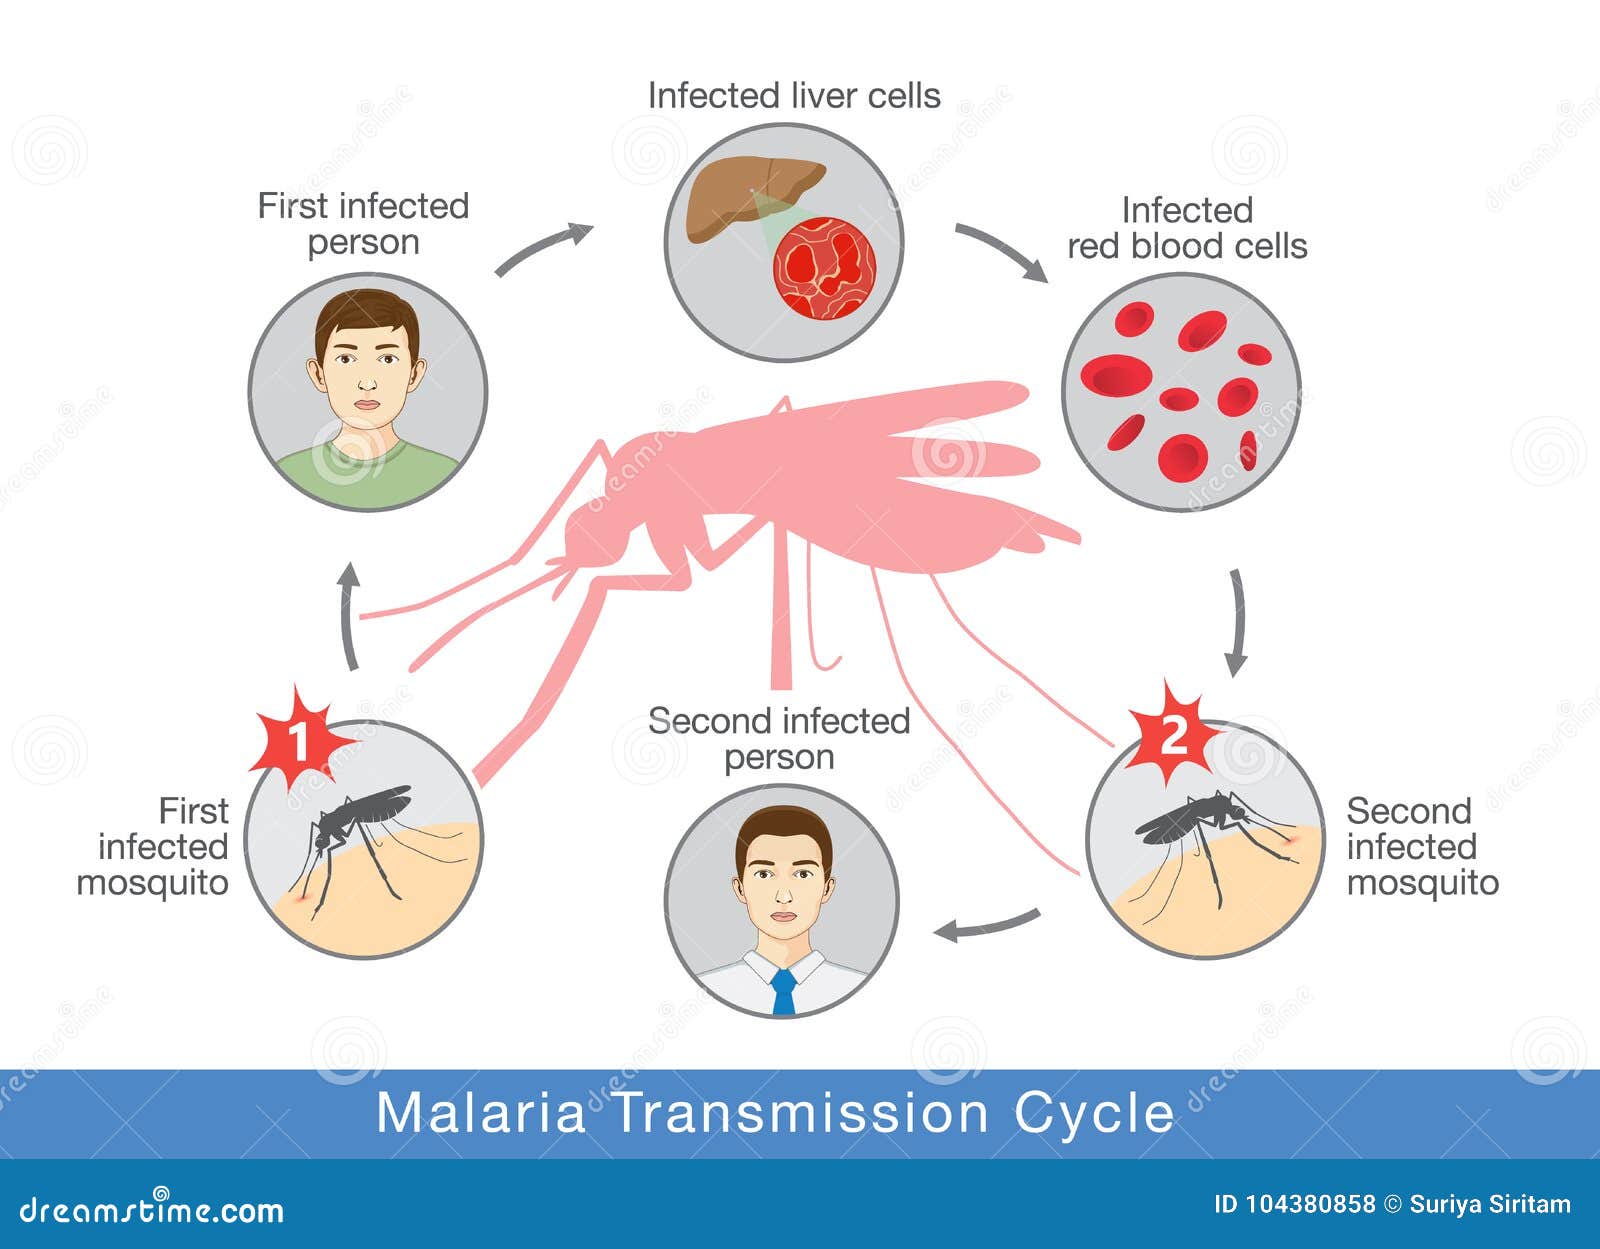 Возбудителем зоонозной малярии является